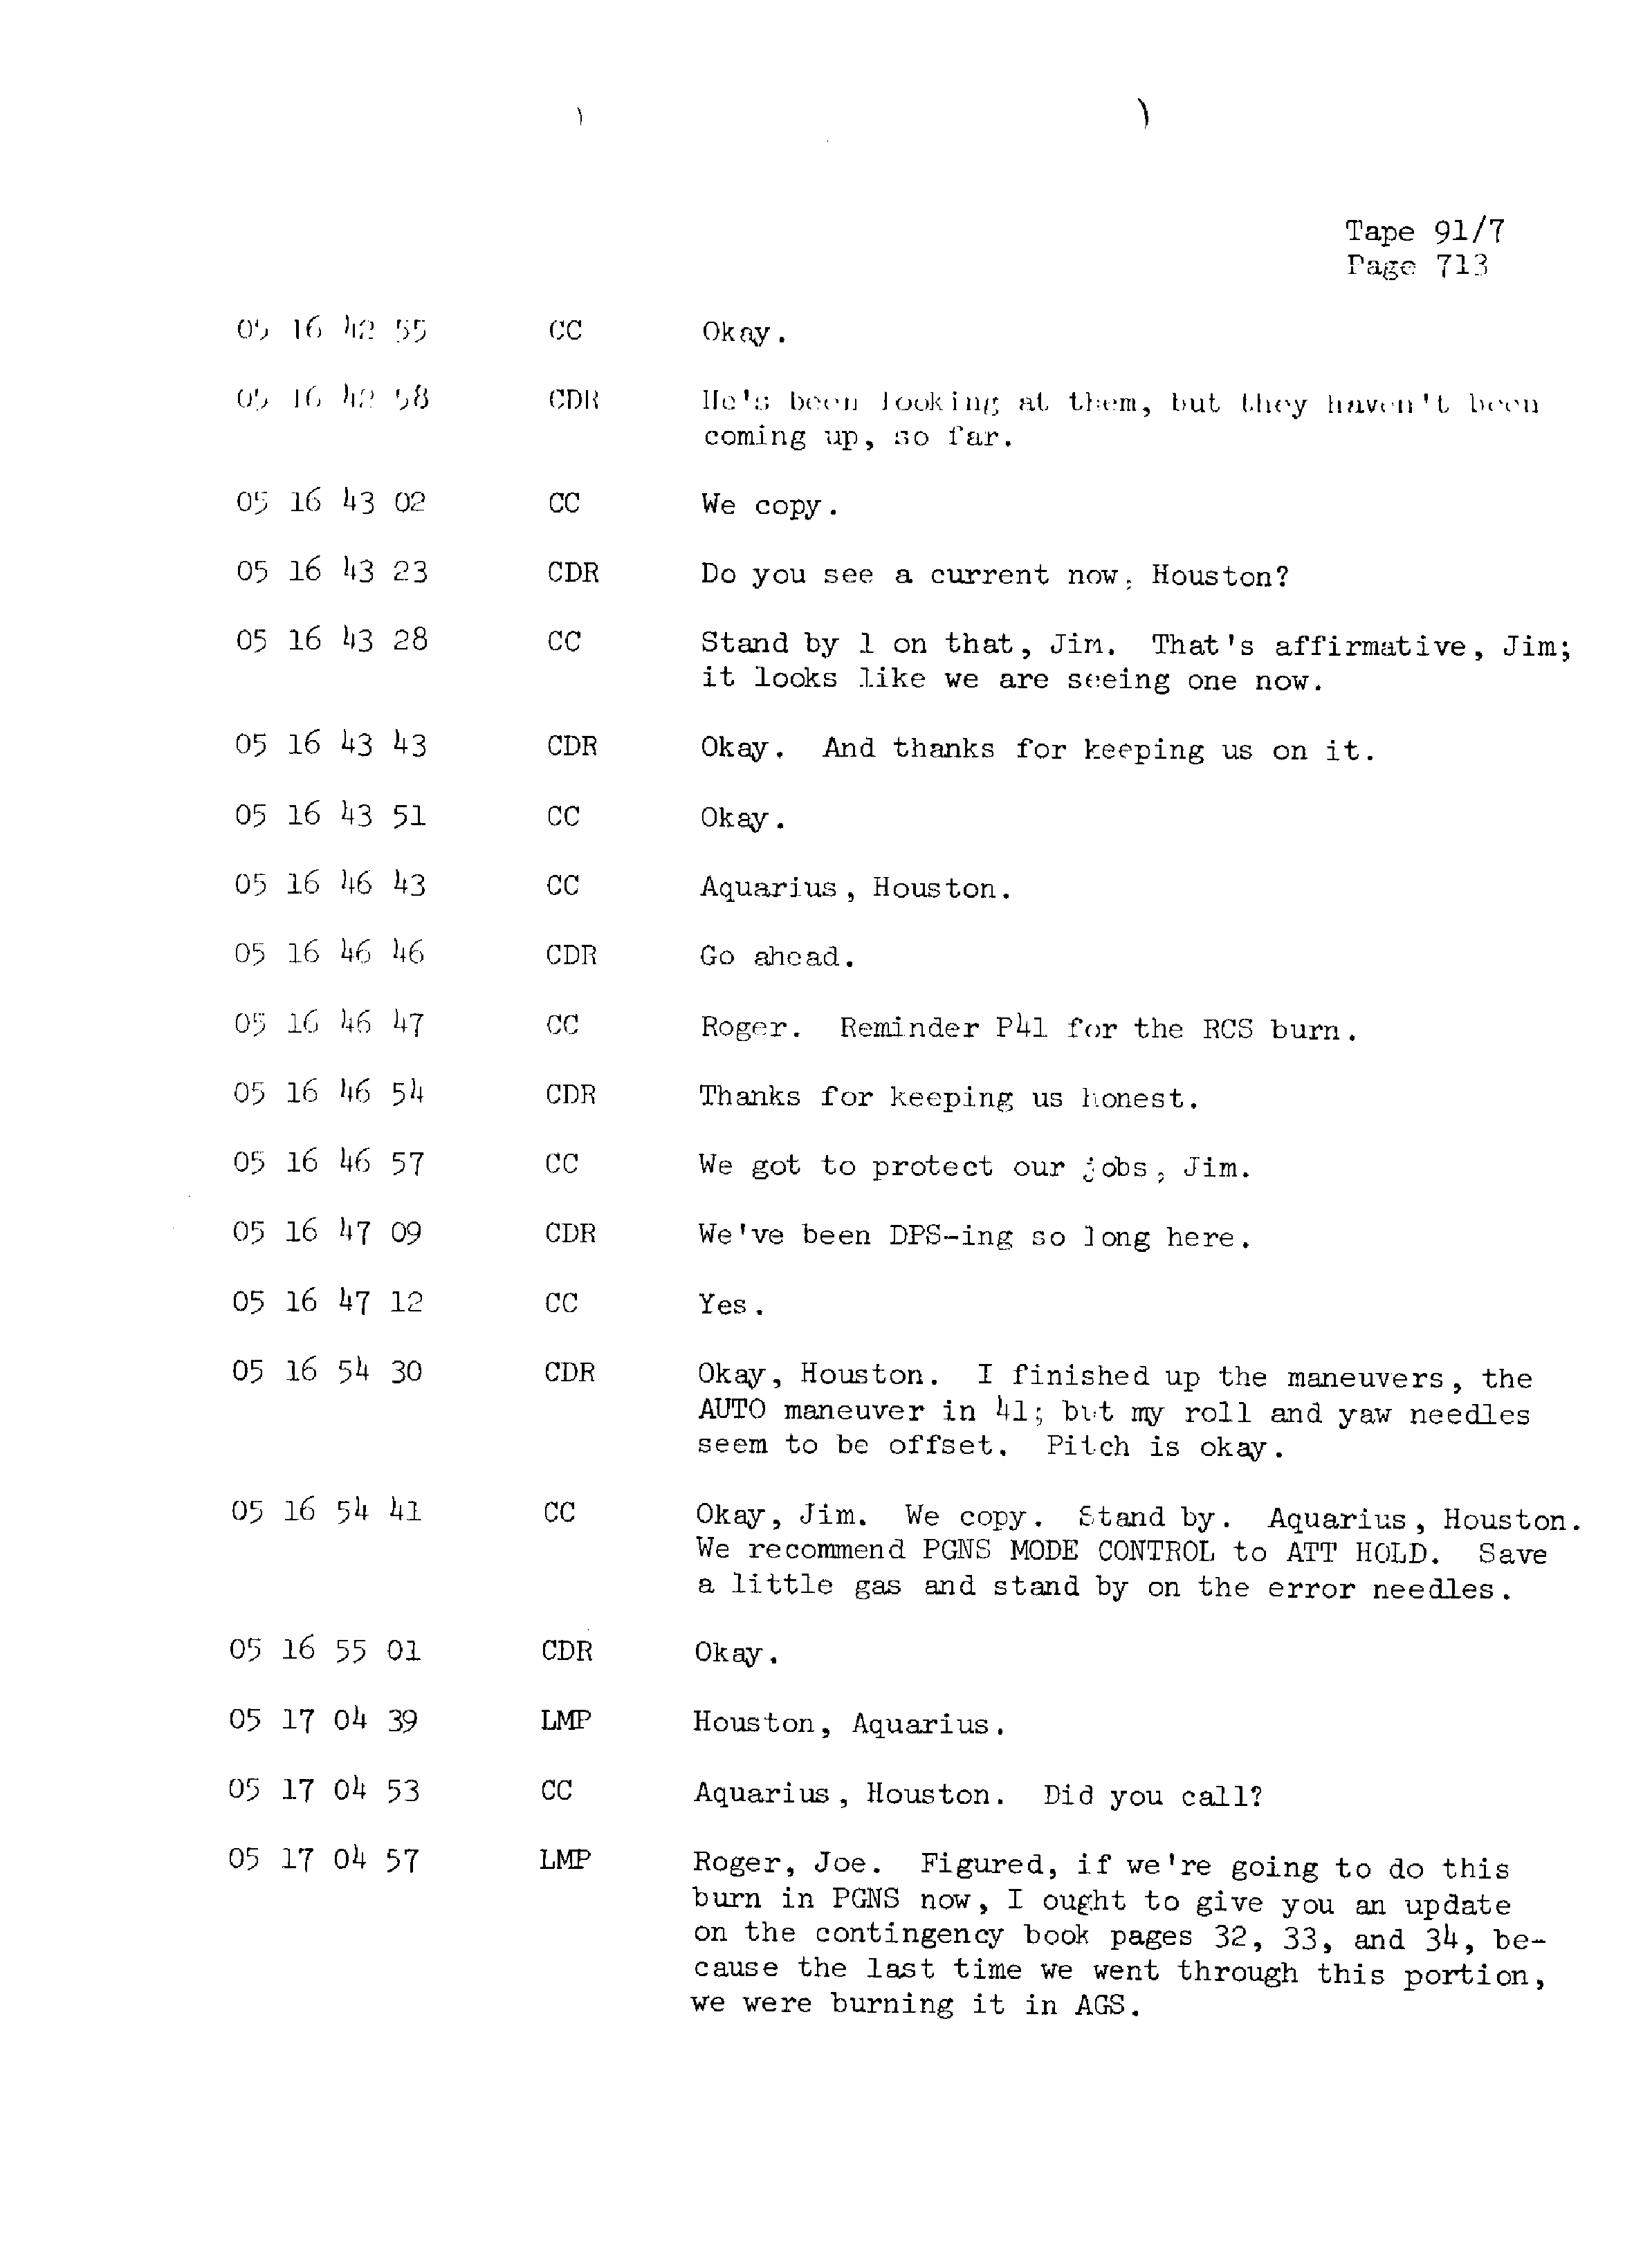 Page 720 of Apollo 13’s original transcript